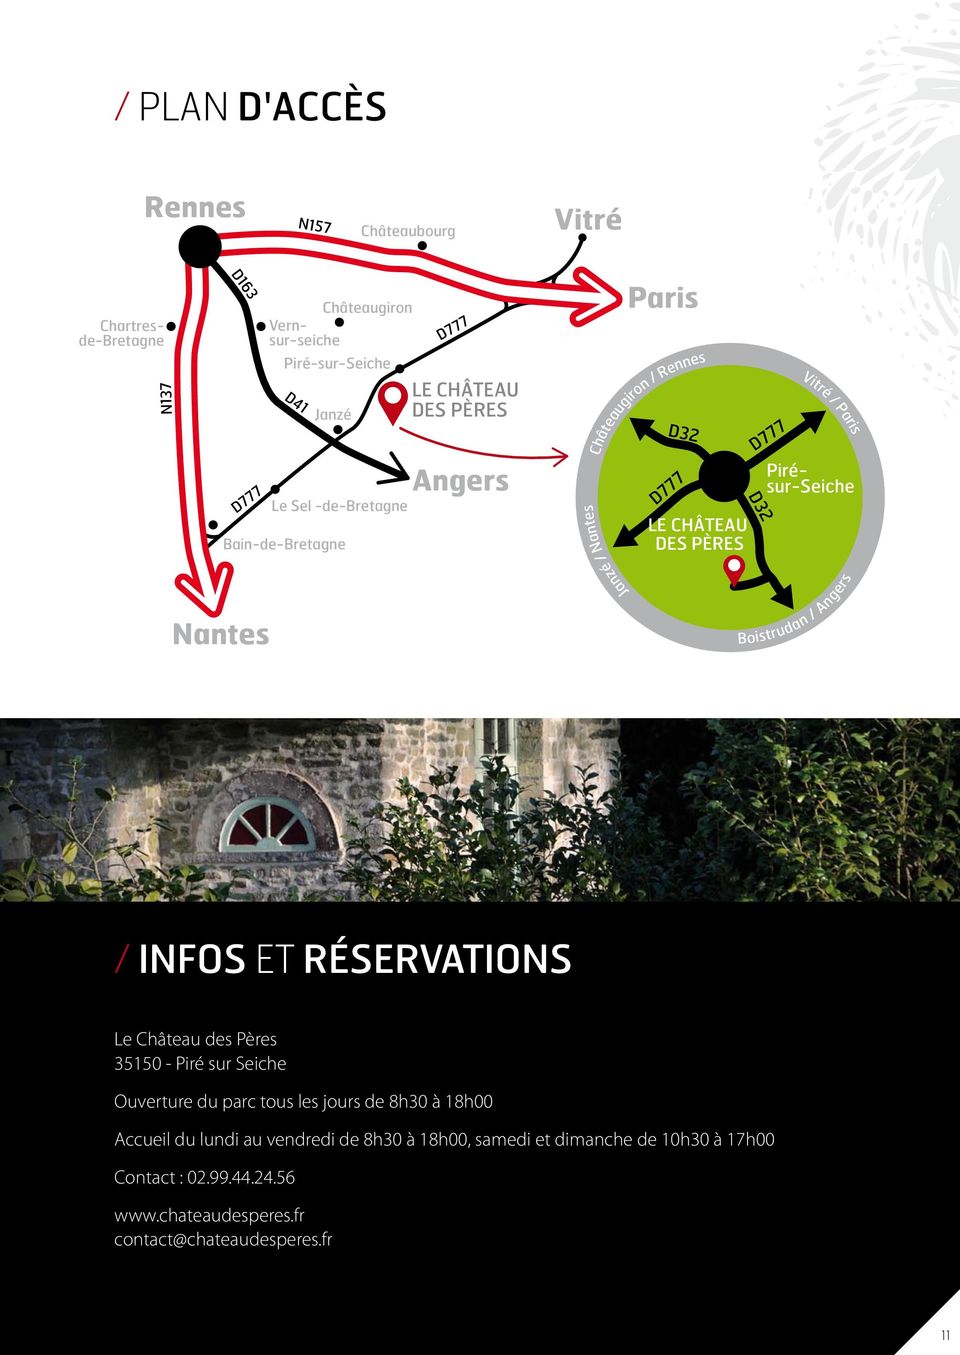 Janzé / Nantes Nantes Boistrudan / Angers / Infos et réservations Le Château des Pères 35150 - Piré sur Seiche Ouverture du parc tous les jours de 8h30 à